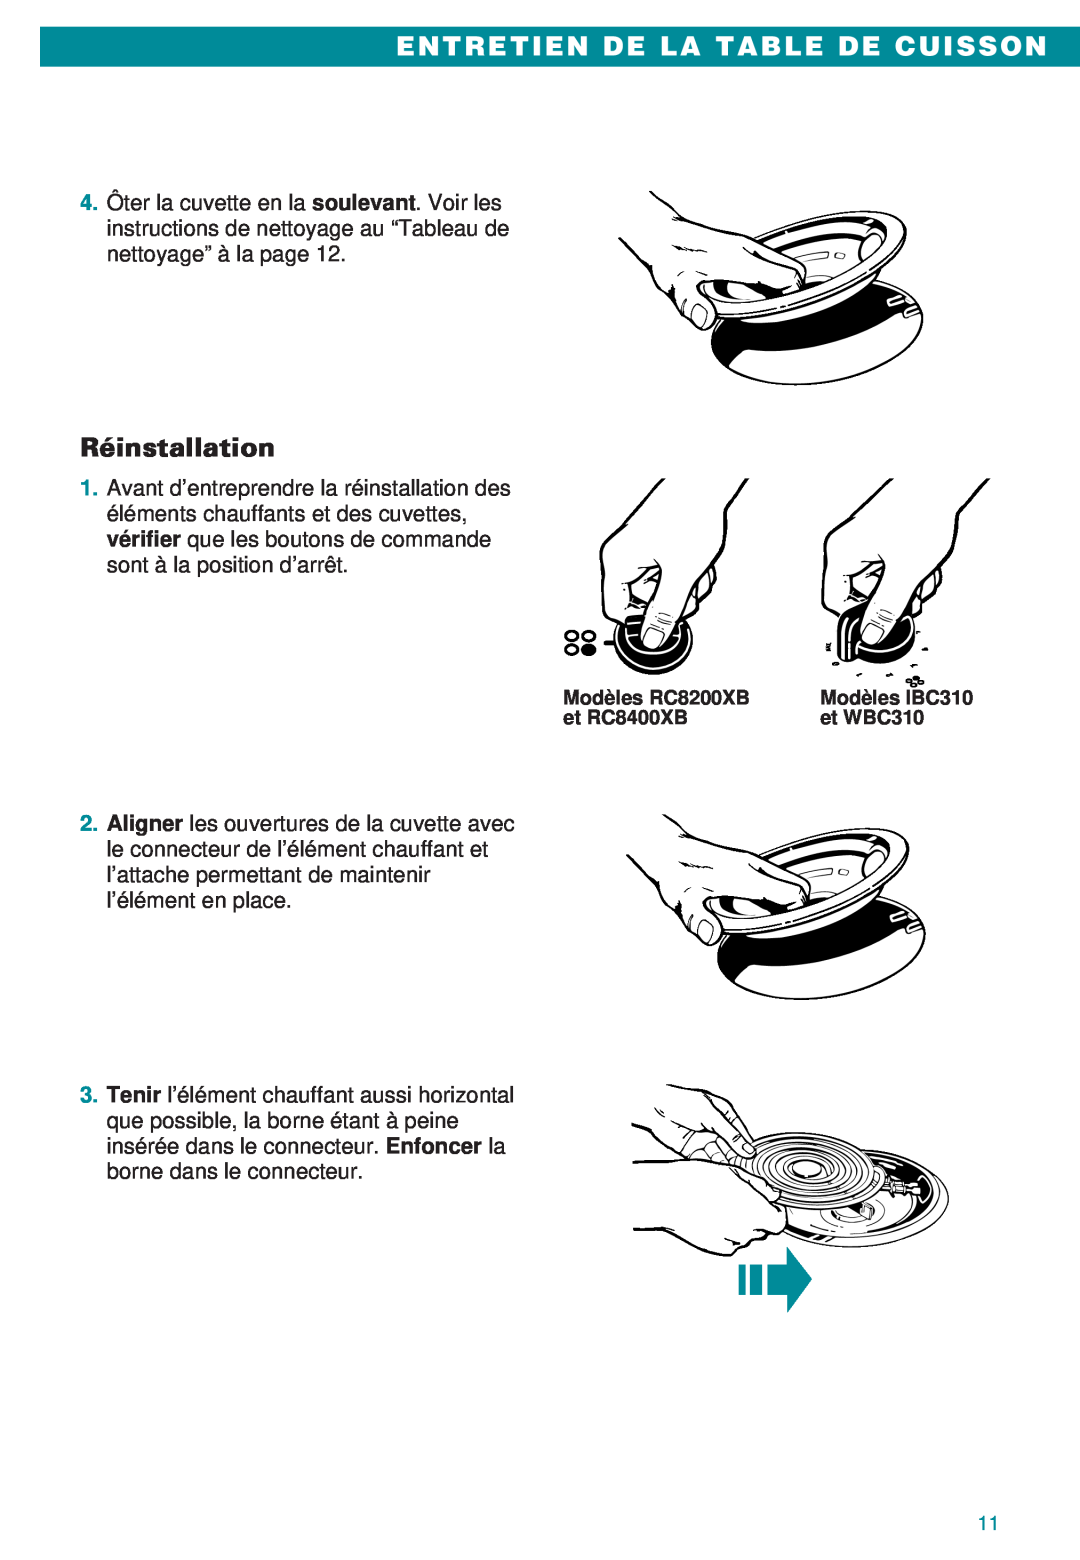 Whirlpool IBC310, RC8400XB, RC8200XB, WBC310 important safety instructions Entretien De La Table De Cuisson, Réinstallation 